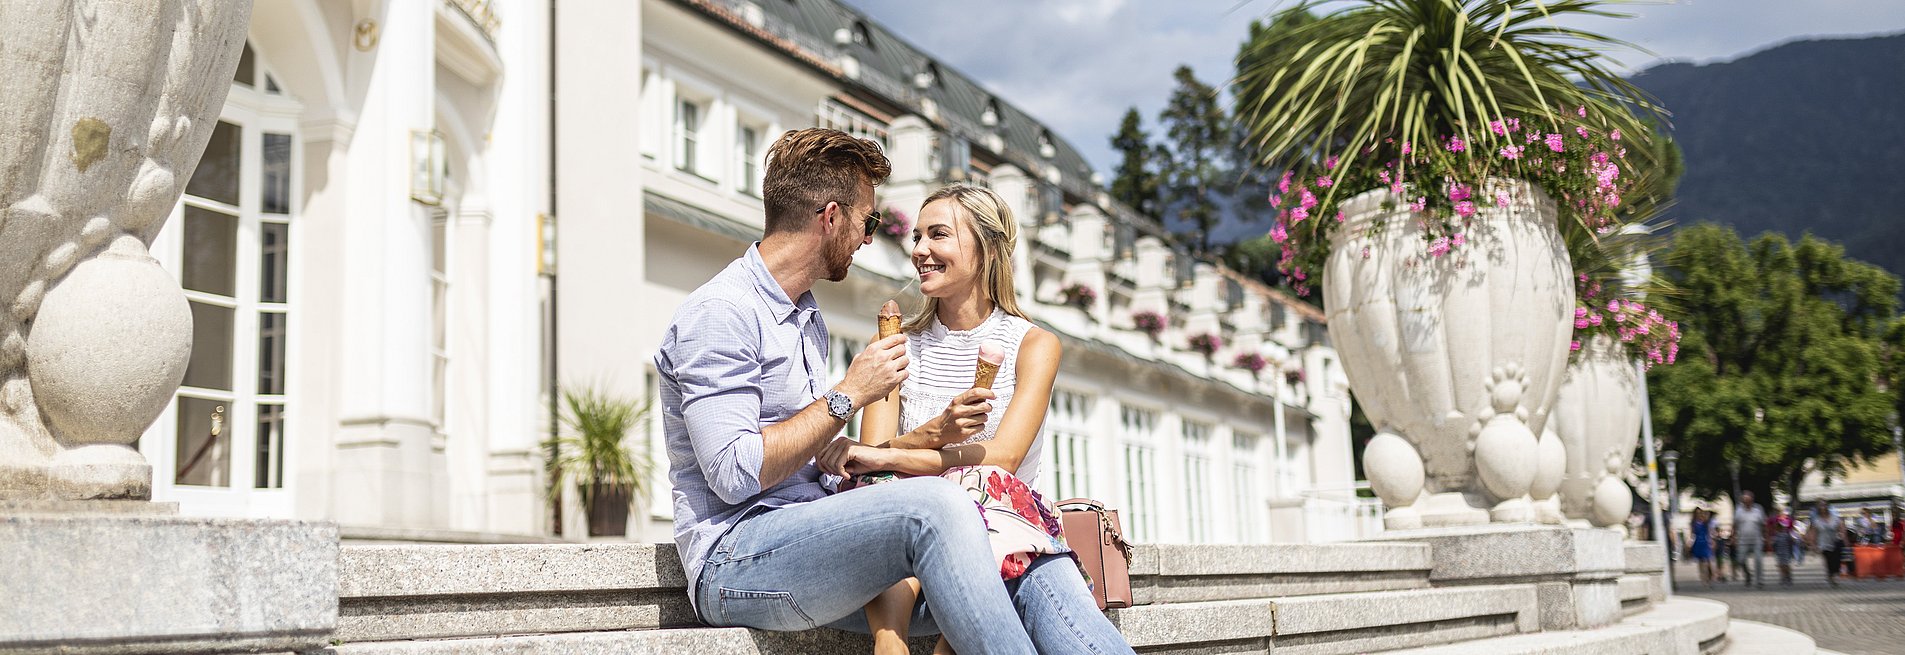 Paar sitzt auf einer Treppe im Freien und isst Eis